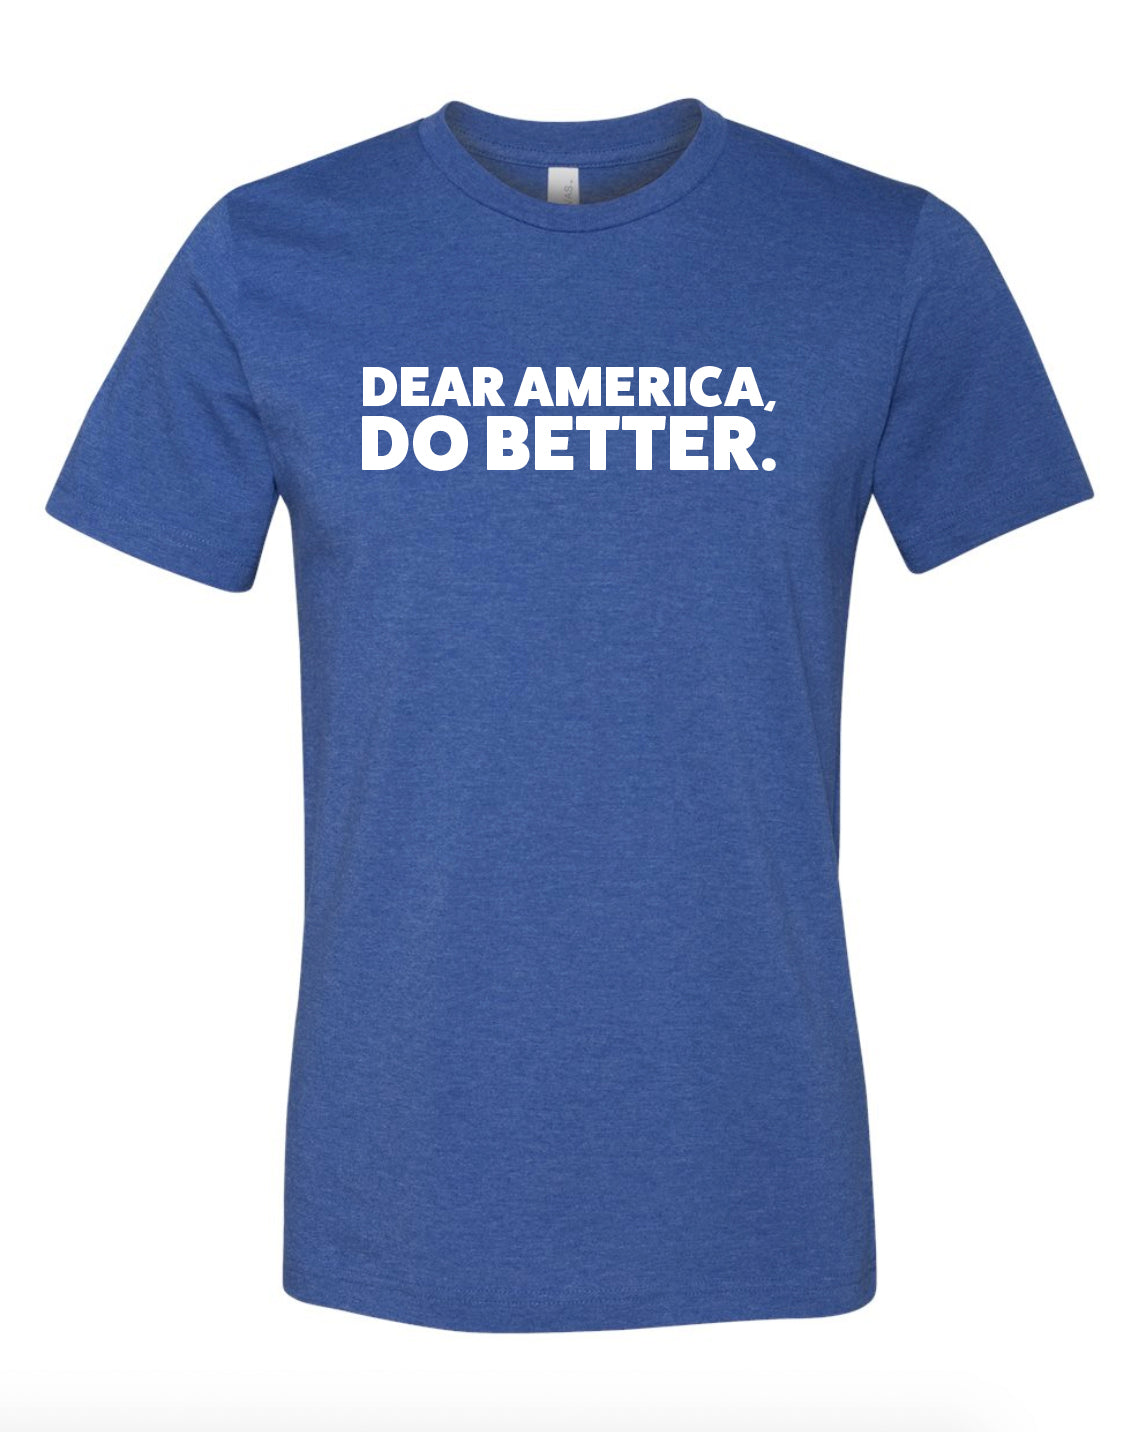 Dear America, Do Better Shirt